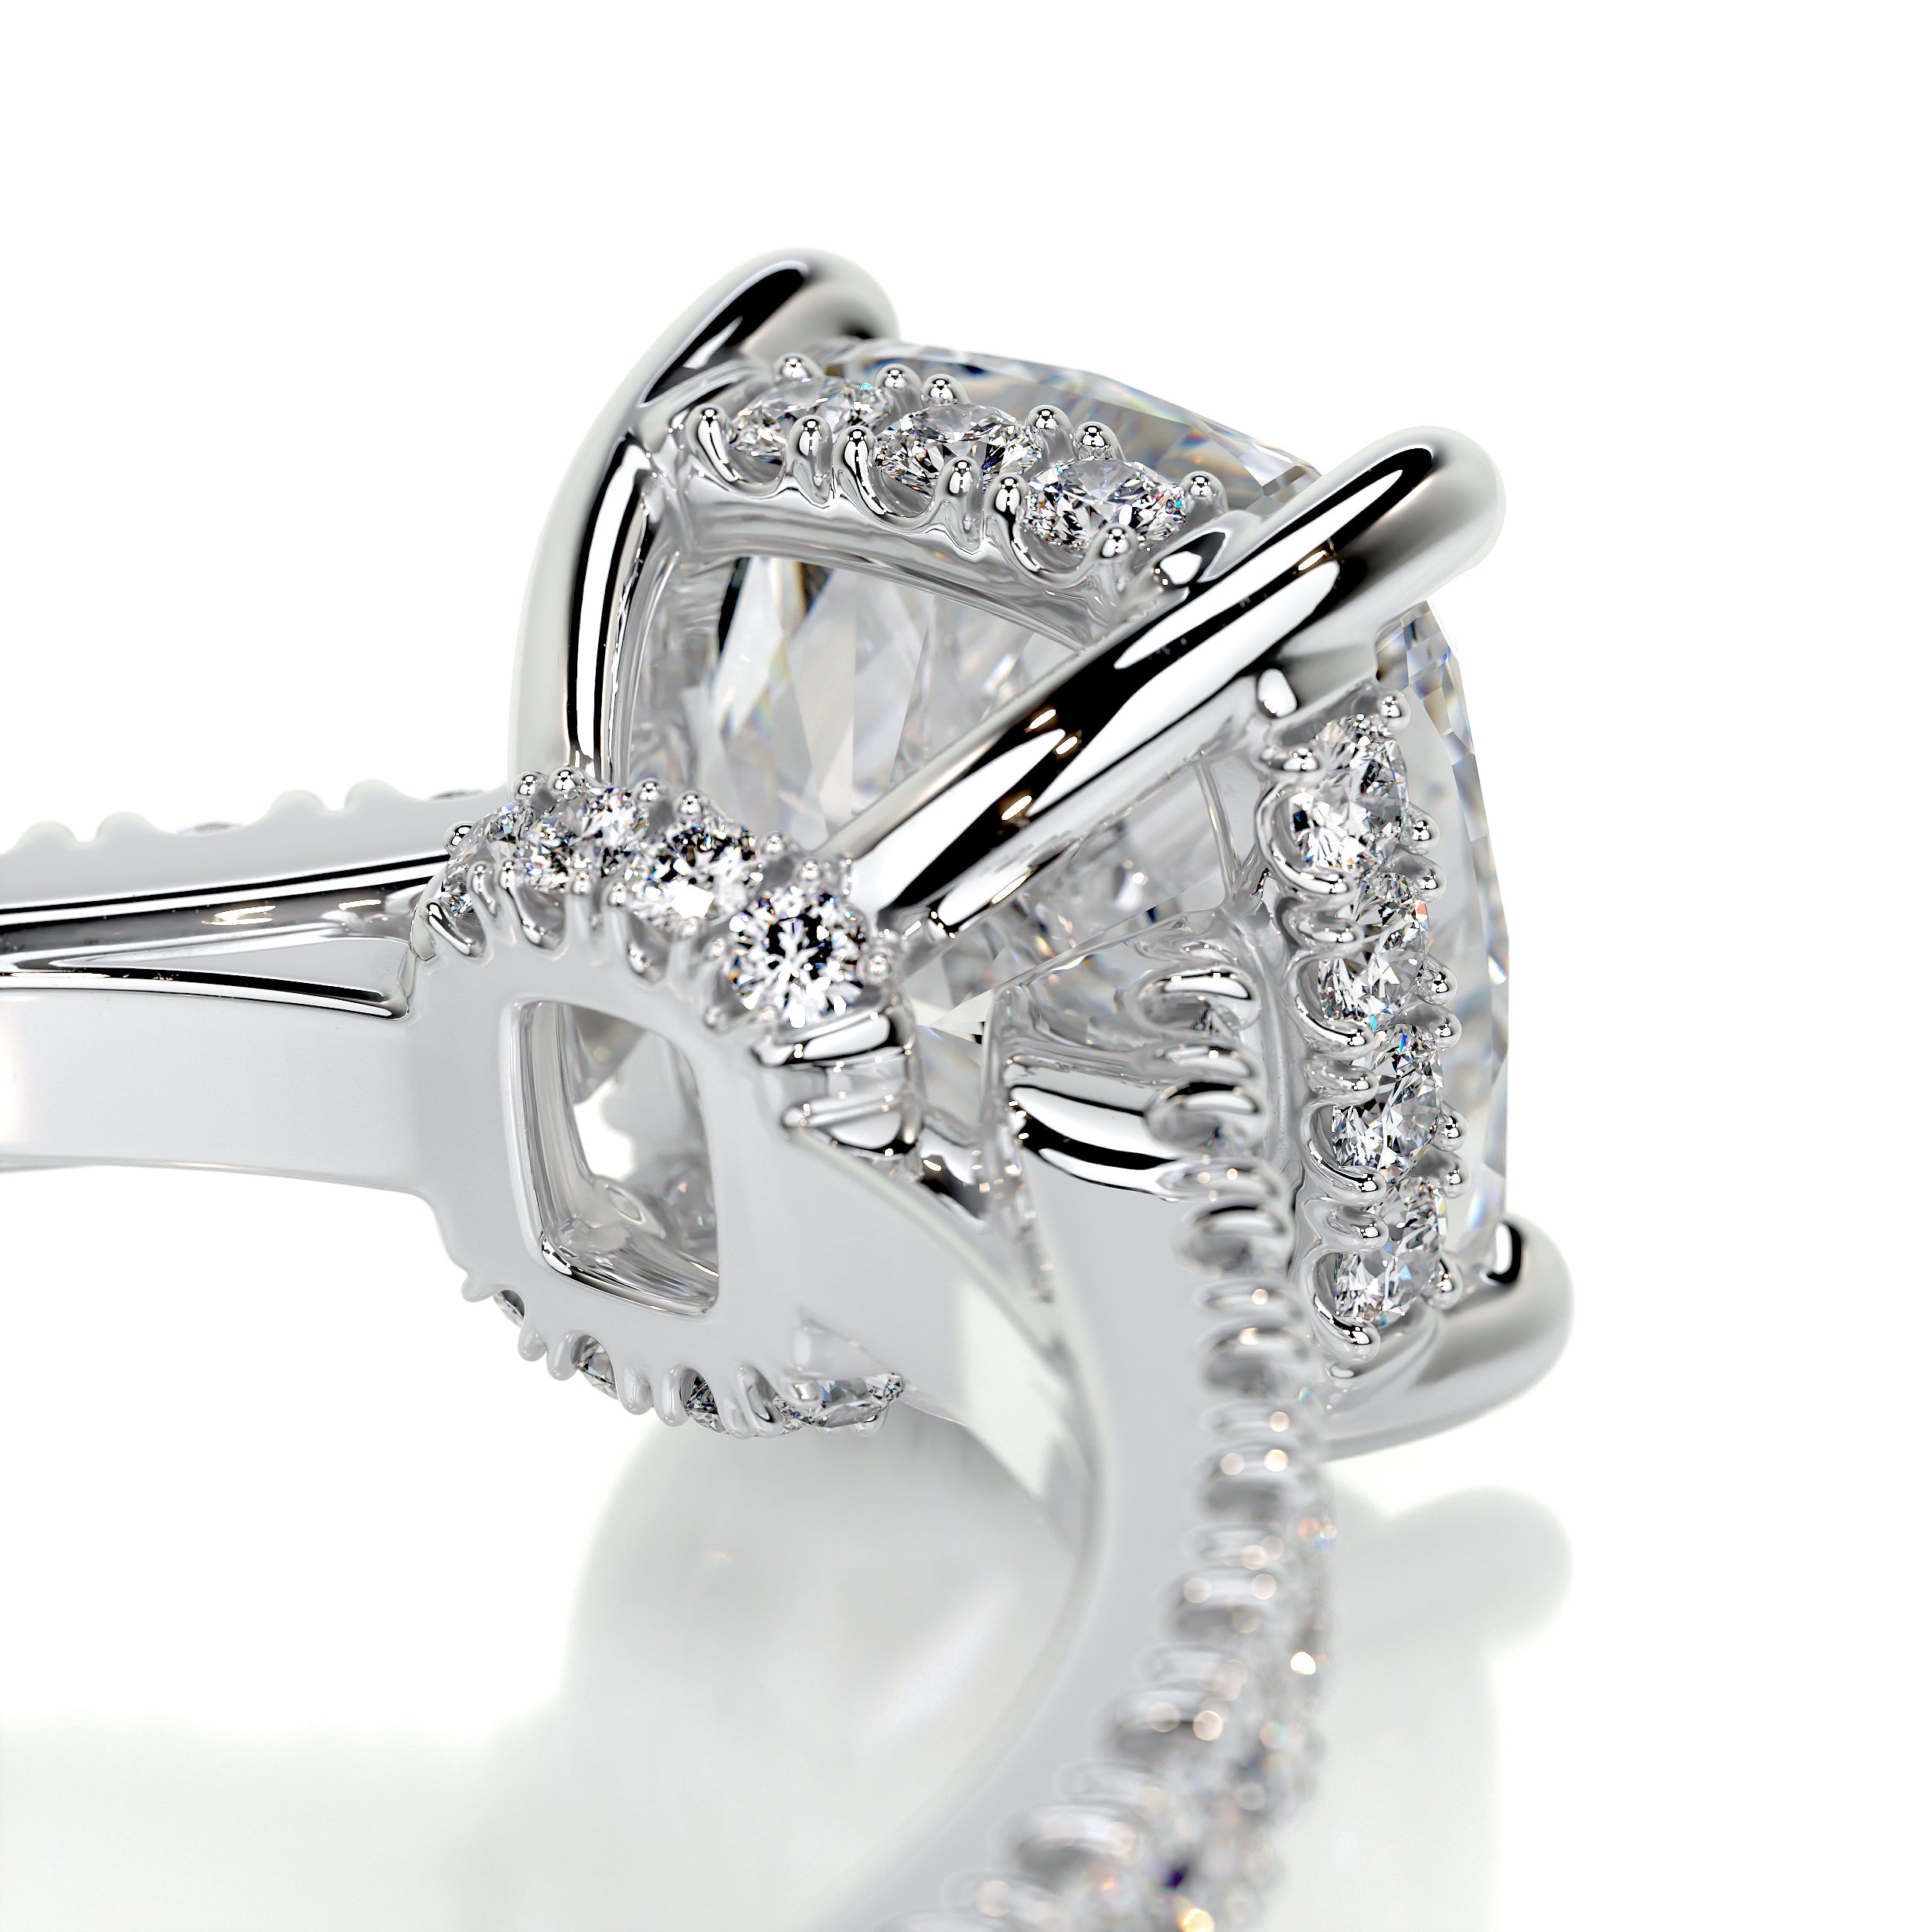 Cassandra Diamond Engagement Ring -14K White Gold